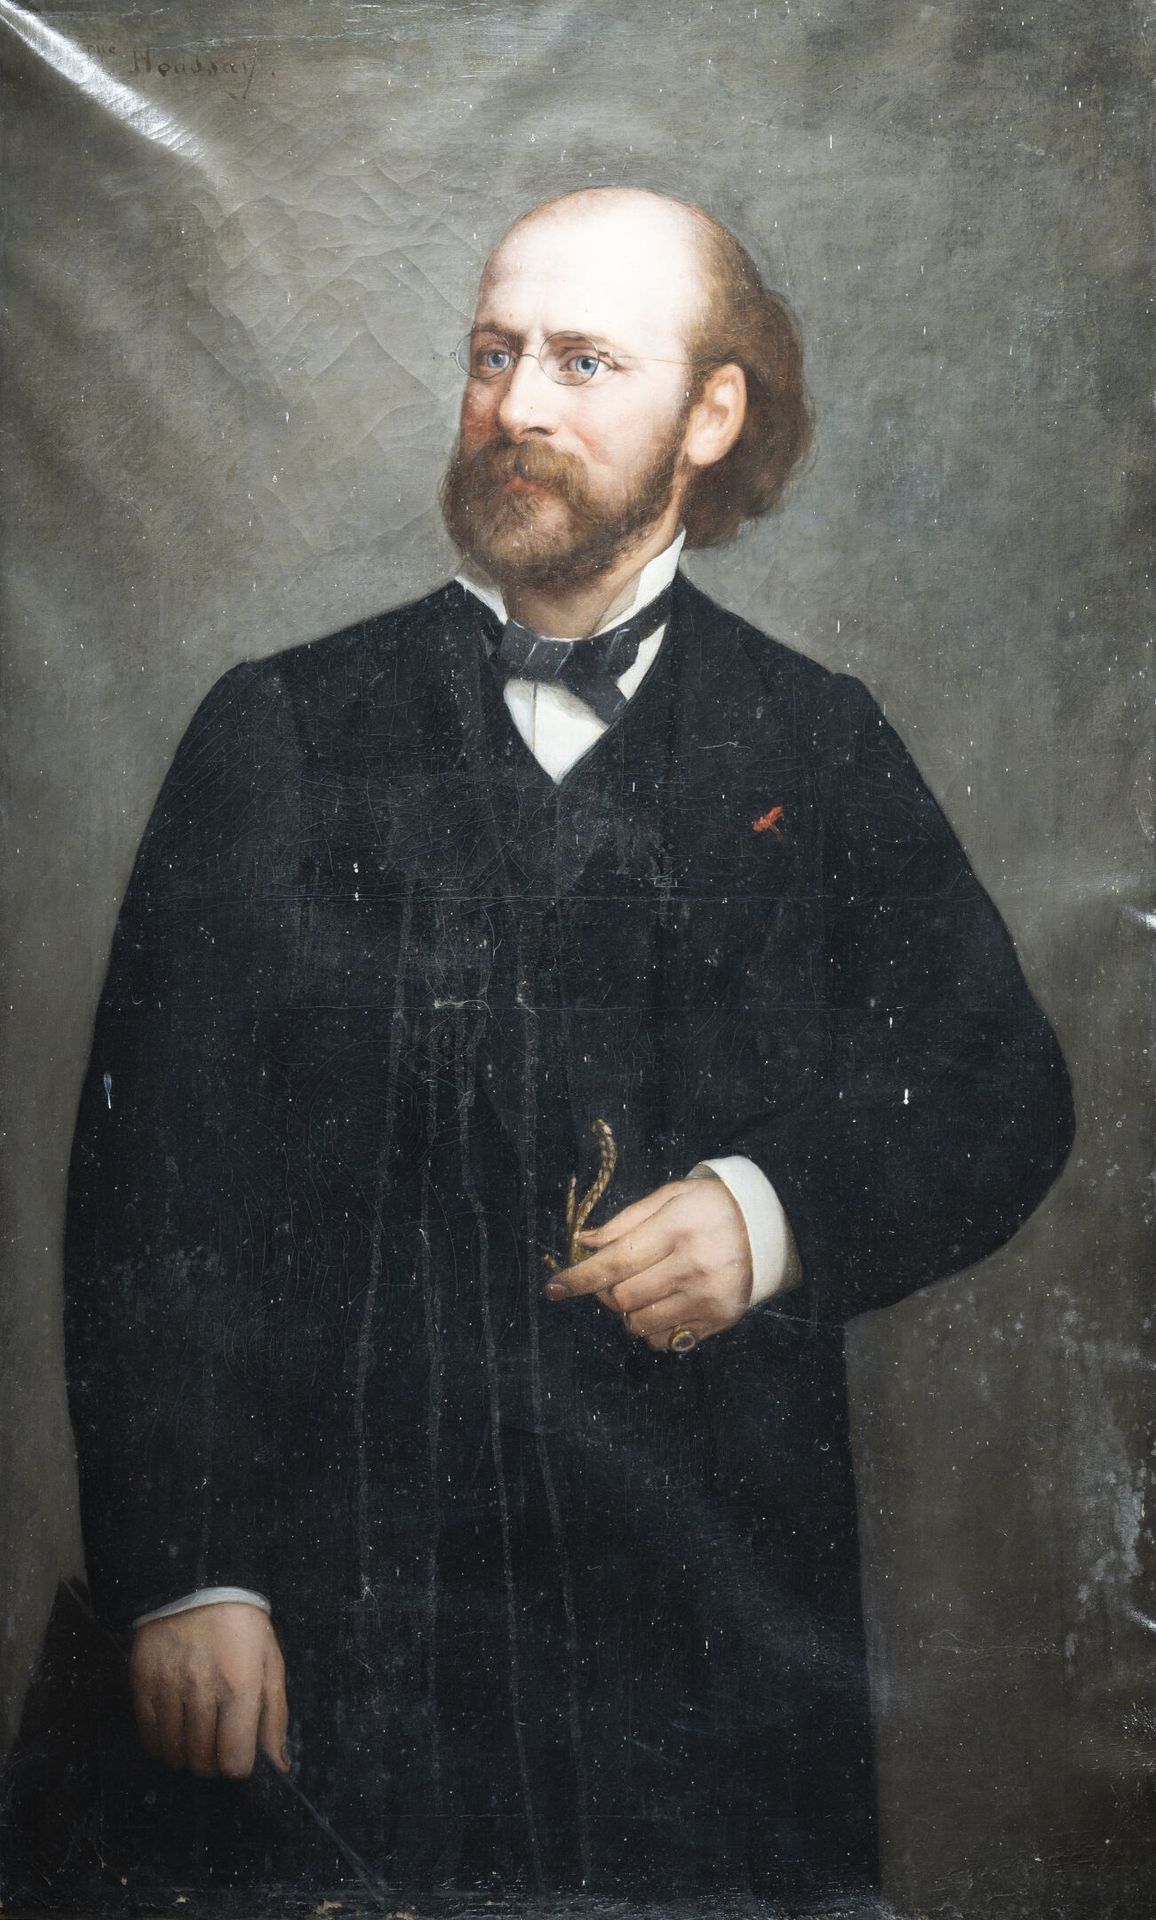 Null 约瑟芬-胡赛 (1840-1914)
获得荣誉军团勋章的人的画像
布面油画，左上角有签名 
H.67厘米宽.110厘米高VS